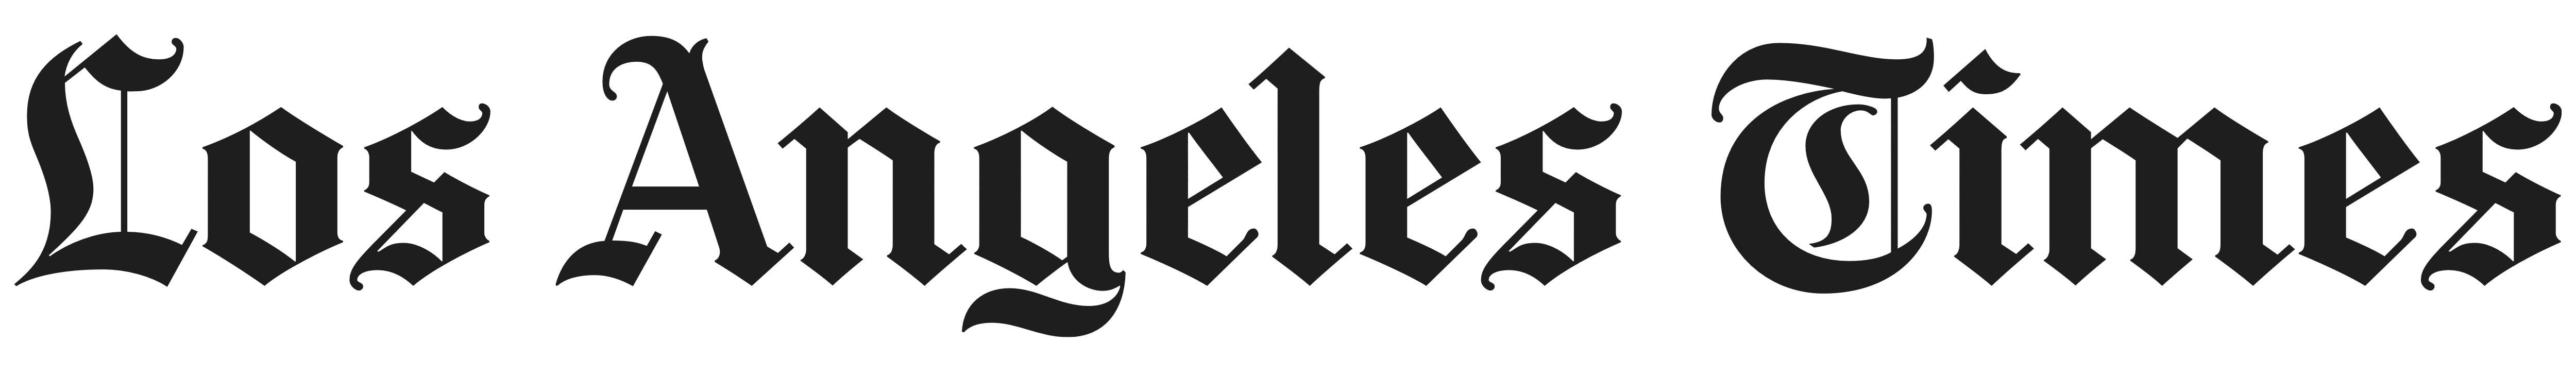 The LA Times logo